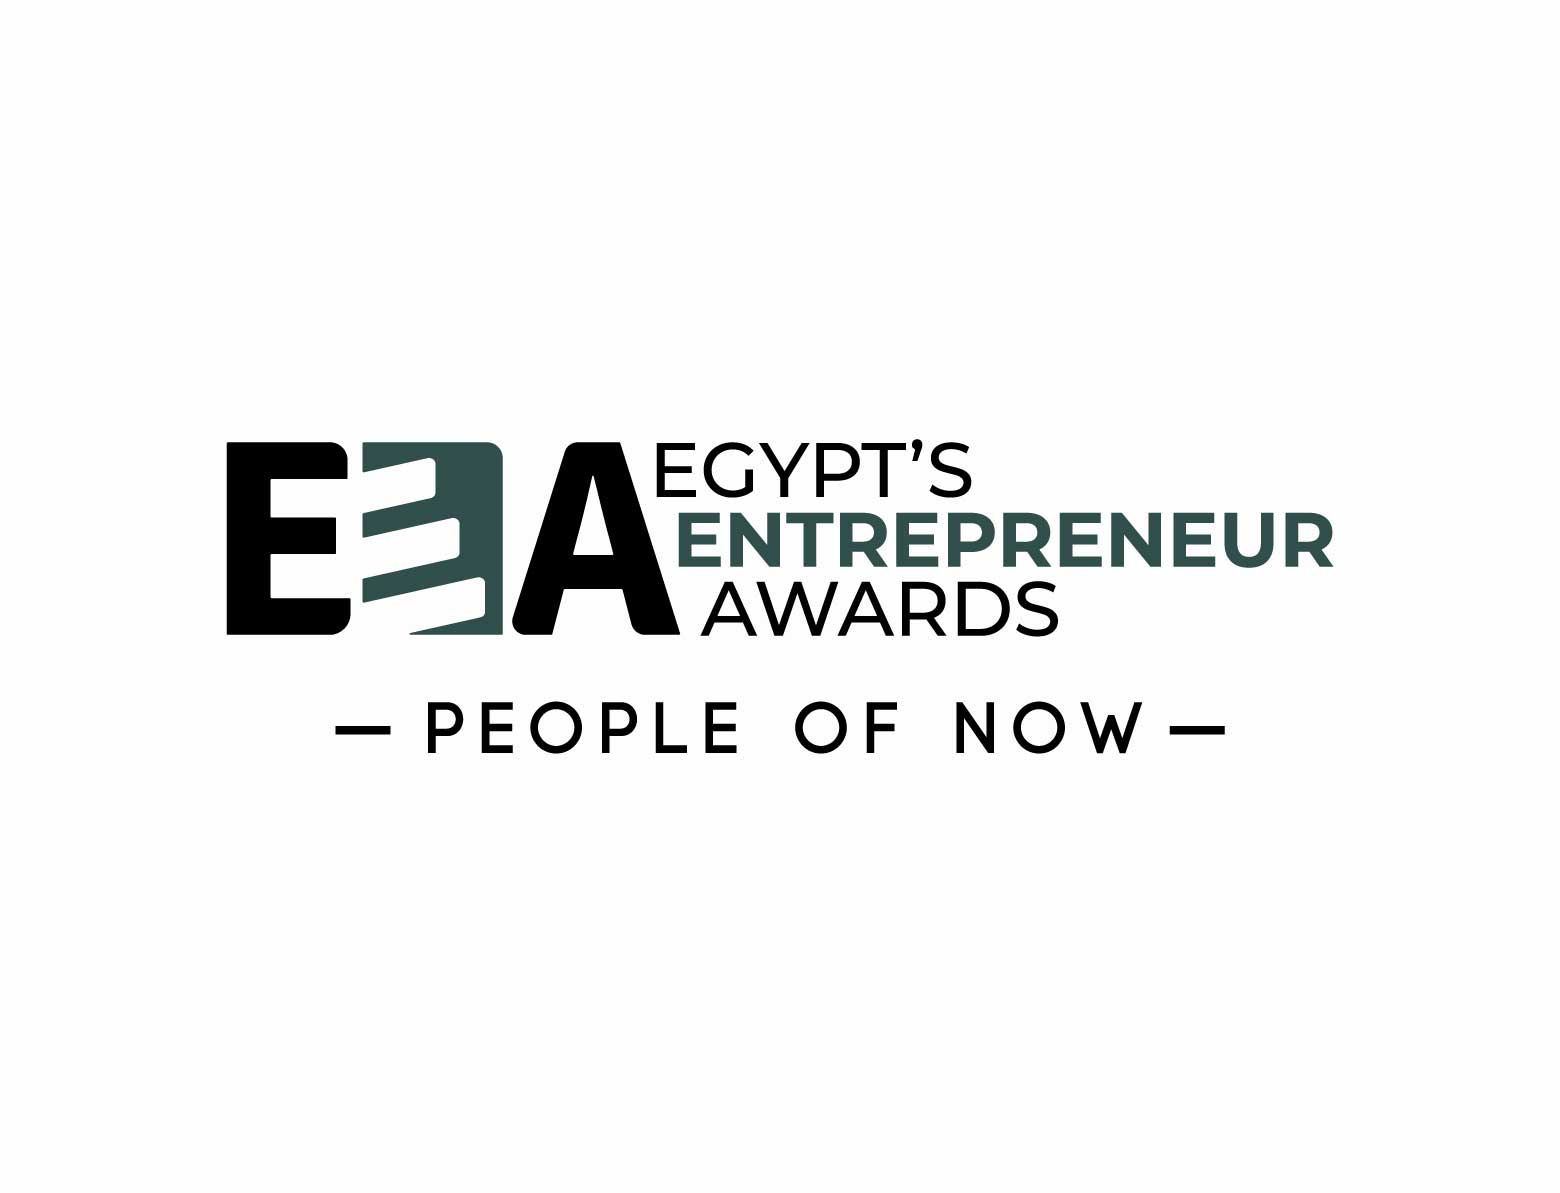 Egypt’s Entrepreneur Awards